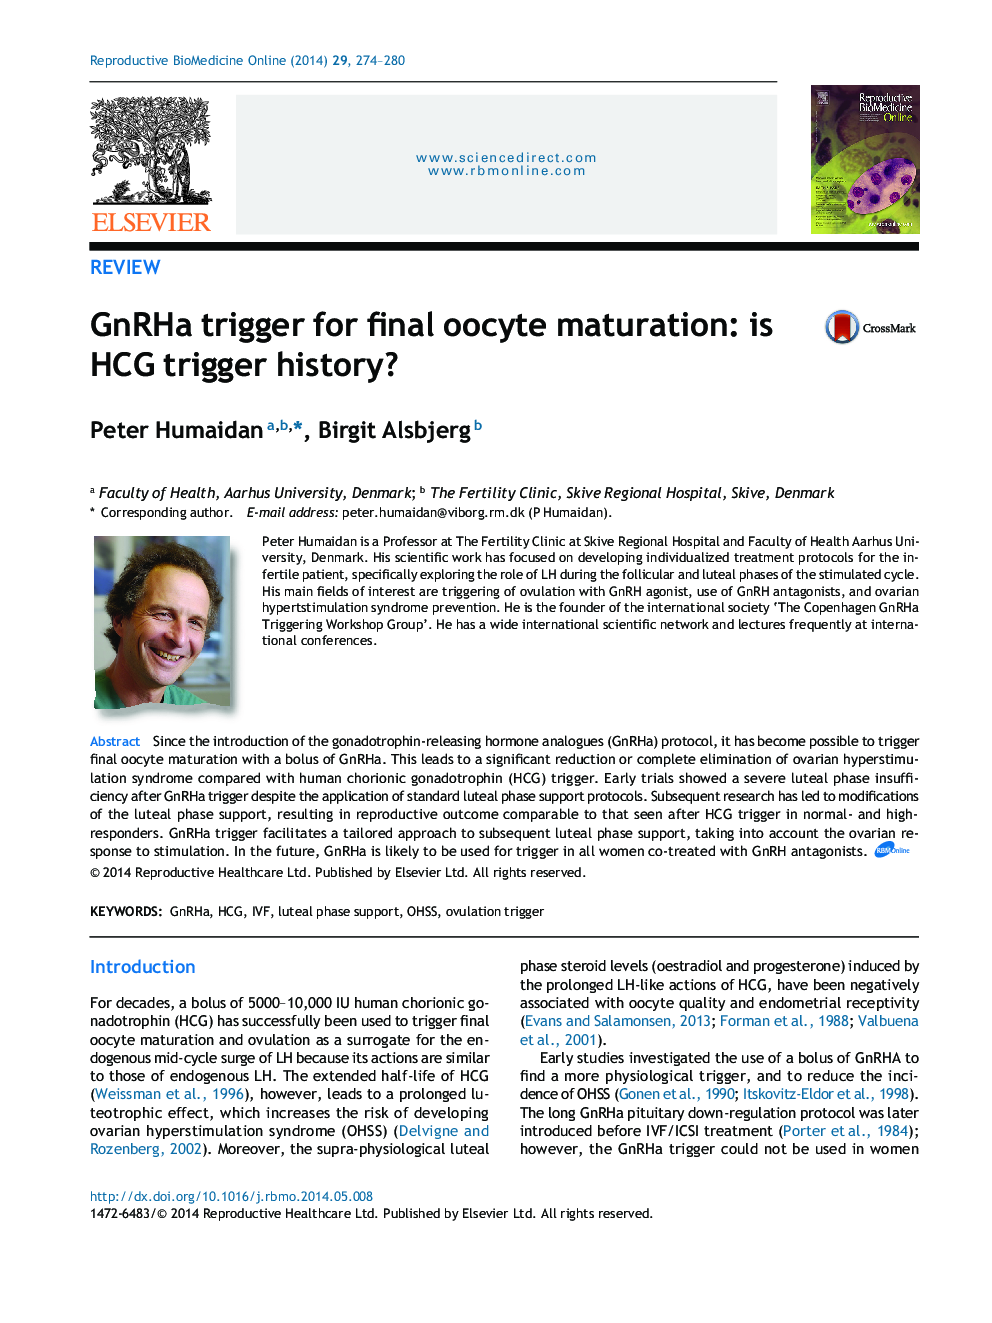 GnRHa trigger for final oocyte maturation: is HCG trigger history?